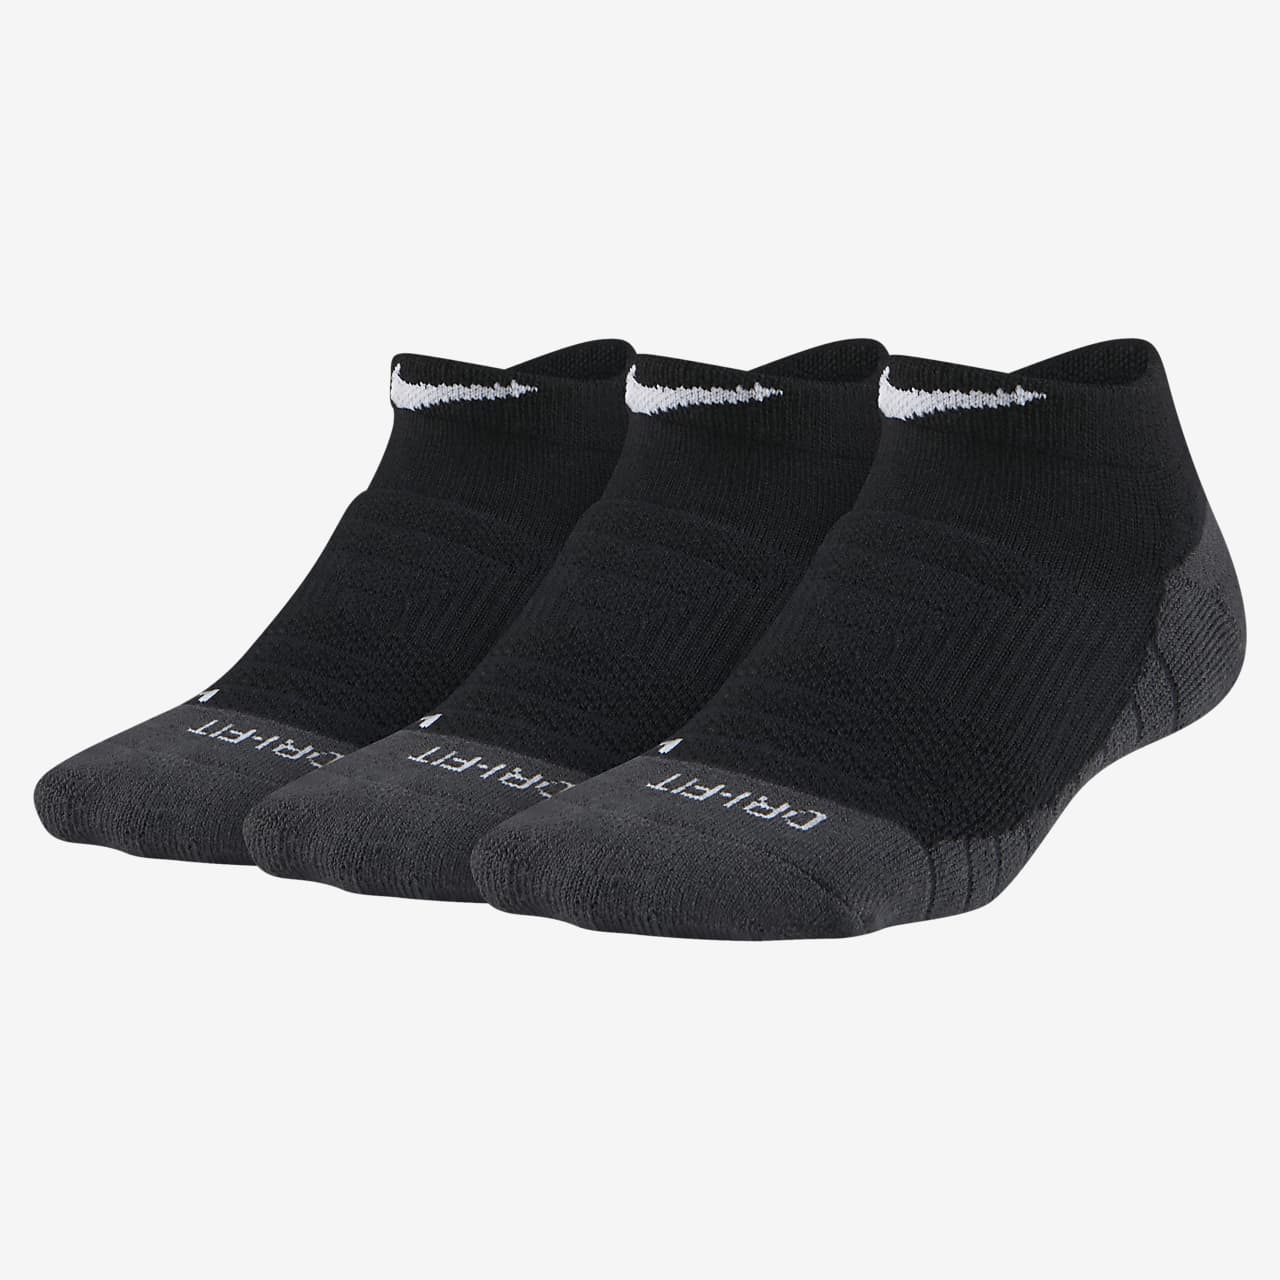 black nike dri fit socks